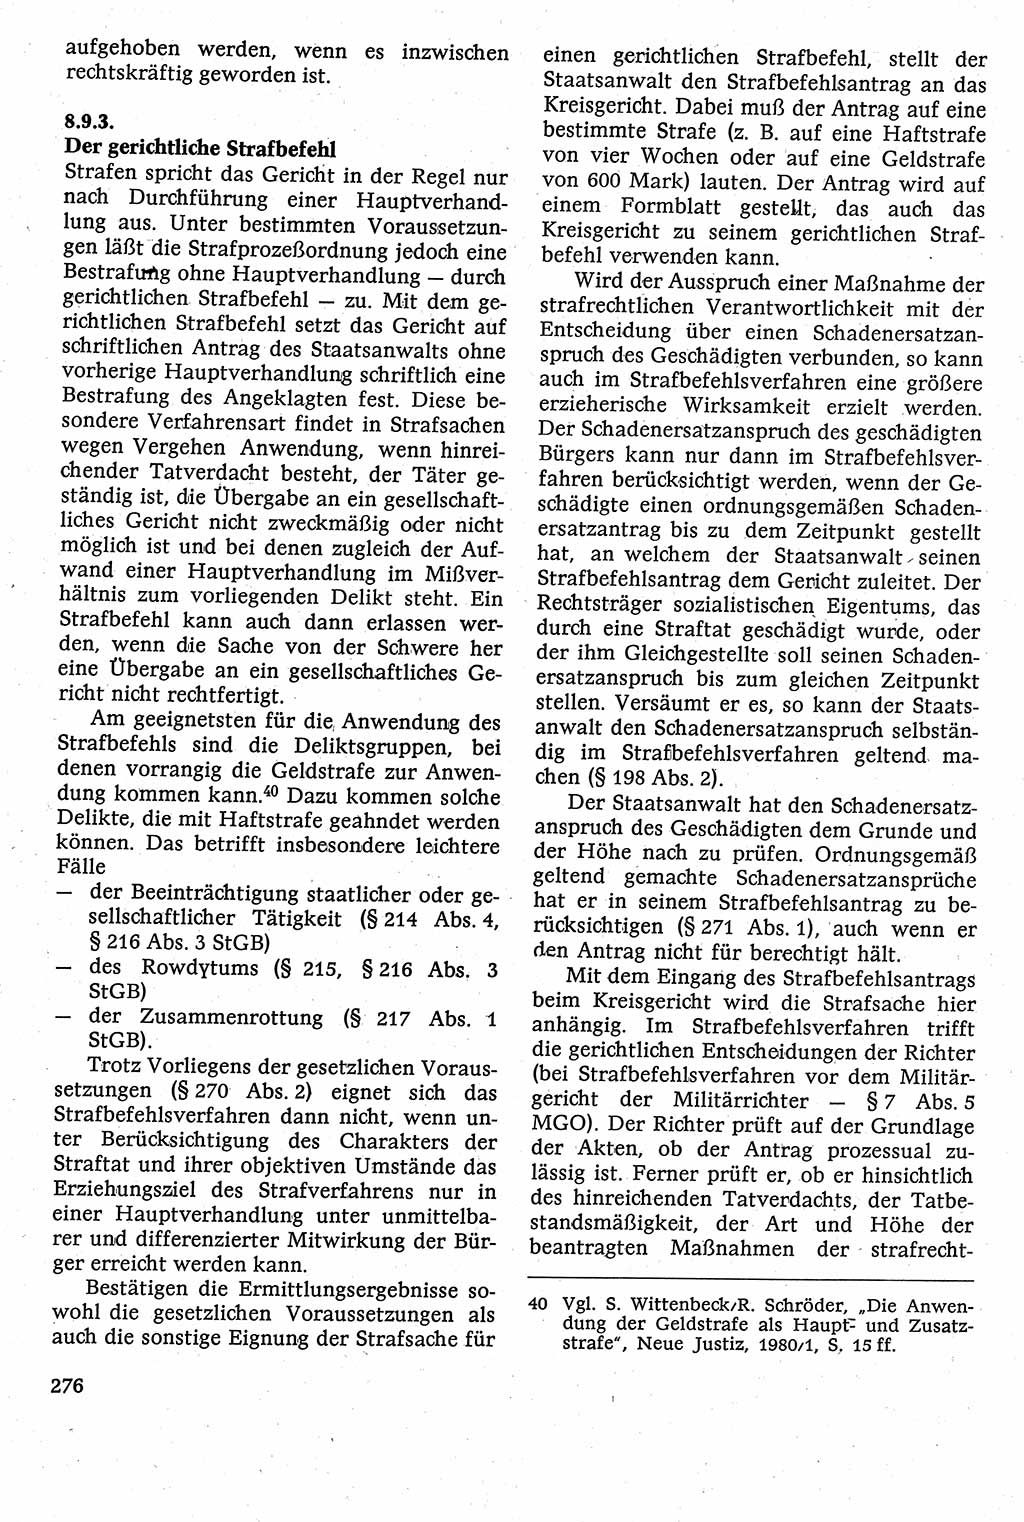 Strafverfahrensrecht [Deutsche Demokratische Republik (DDR)], Lehrbuch 1982, Seite 276 (Strafverf.-R. DDR Lb. 1982, S. 276)